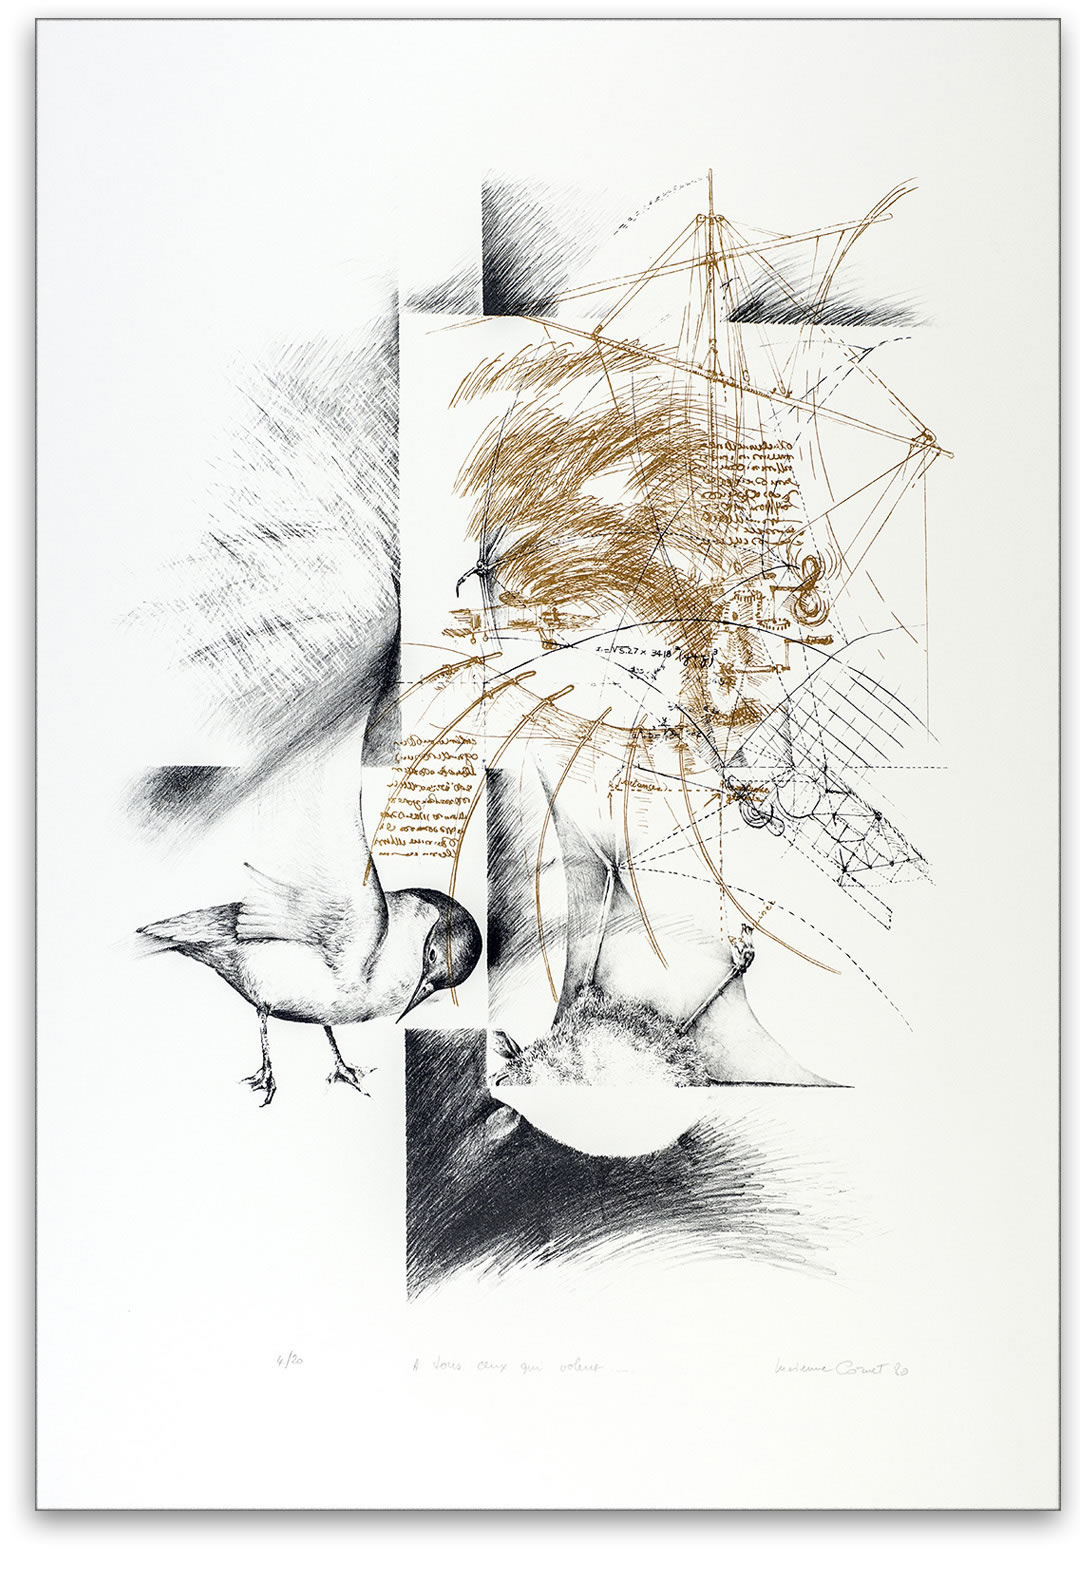 Estampe de Lucienne Cornet / Lithographie / 76 x 56 cm